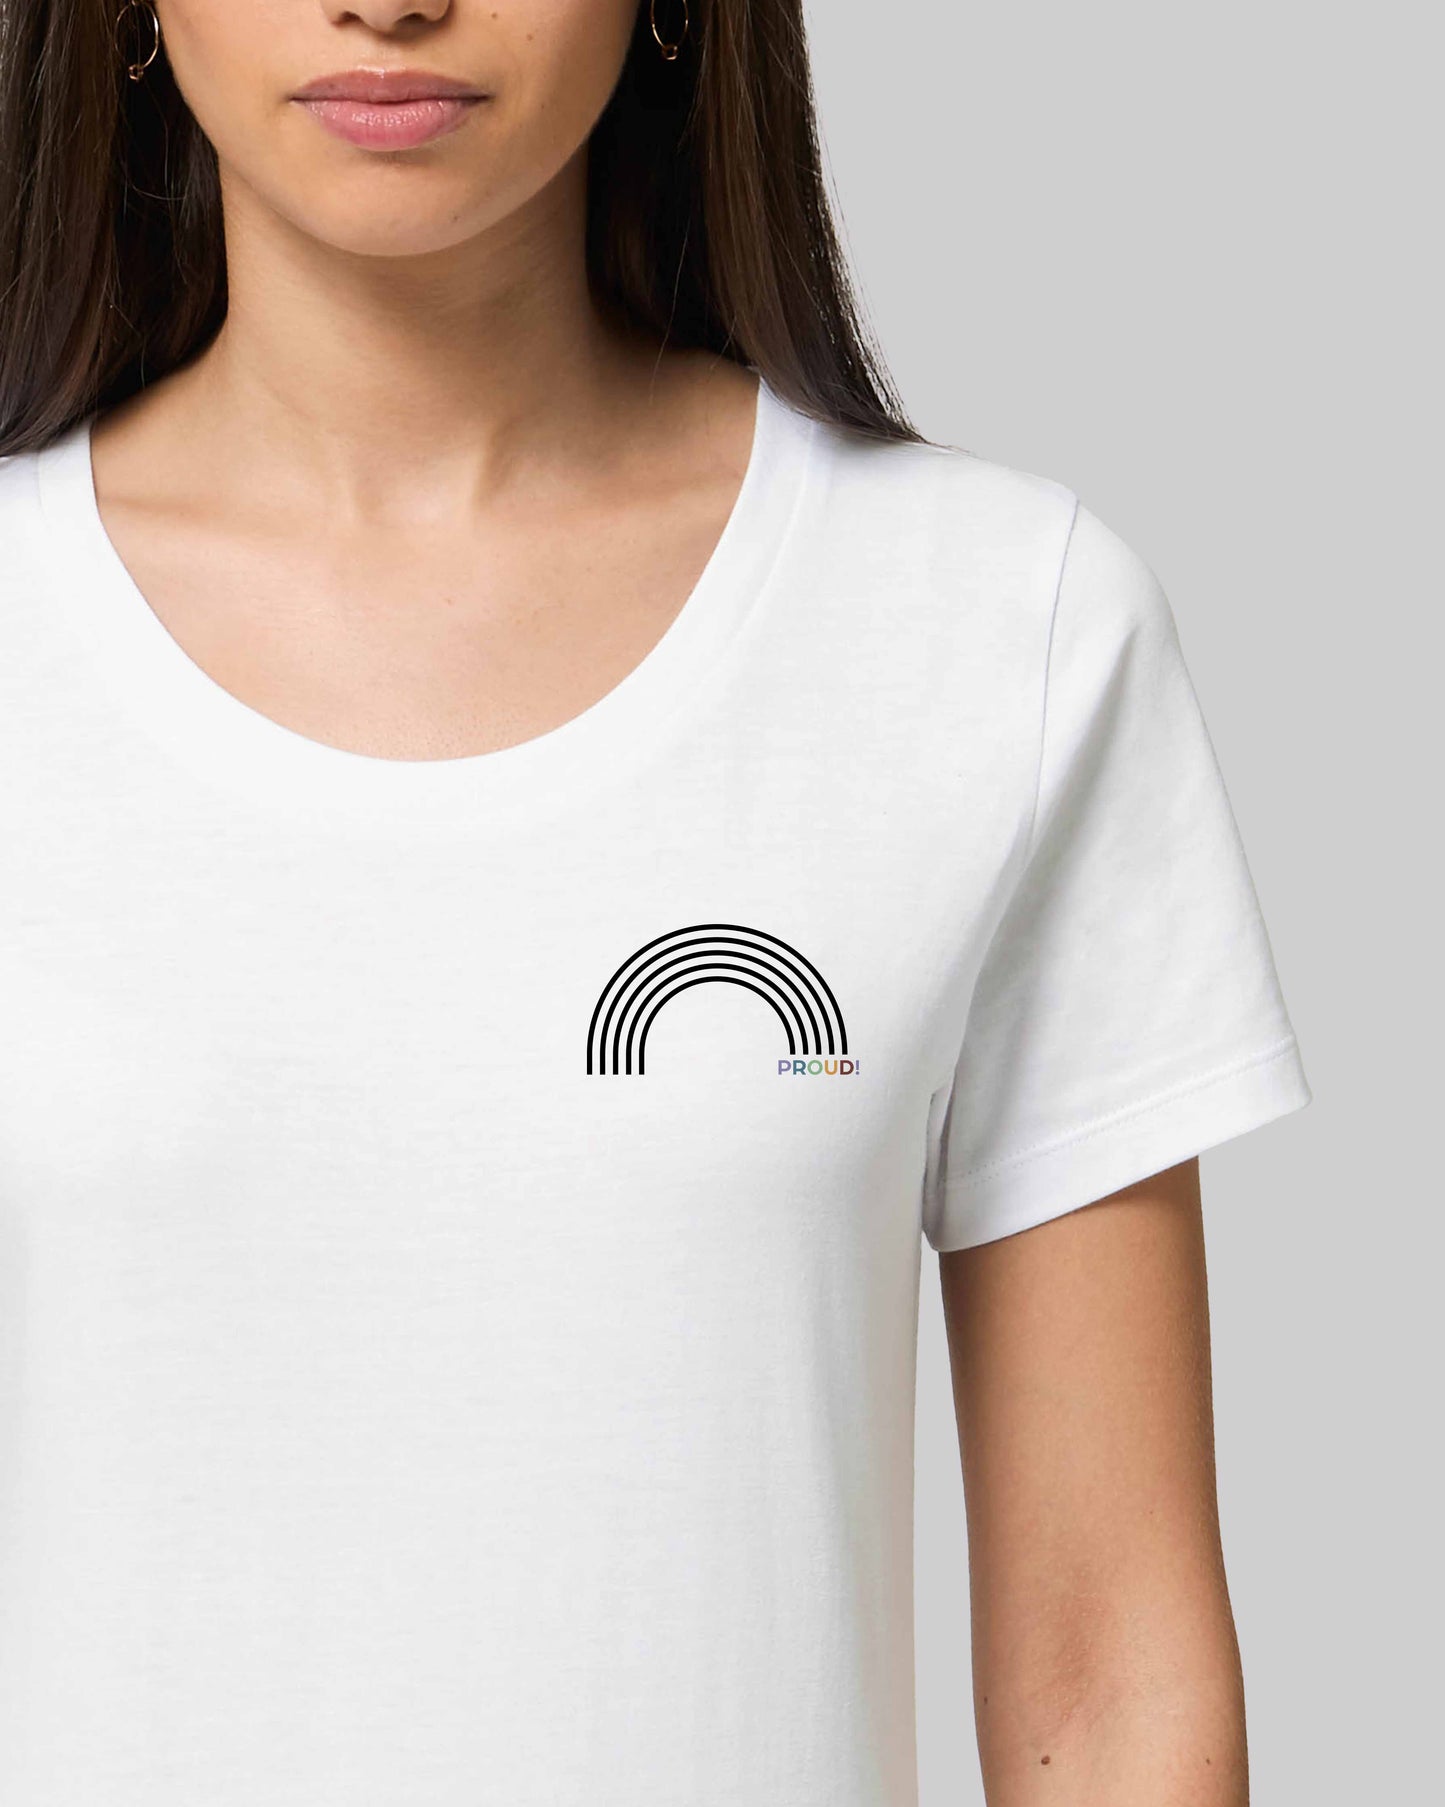 EINHORST® Organic Shirt tailliert in "Weiß" mit dem Motiv "proud Regenbogen" in der Kombination schwarzer Regenbogen mit bunter Schrift, Bild von weiblicher Person mit Shirt